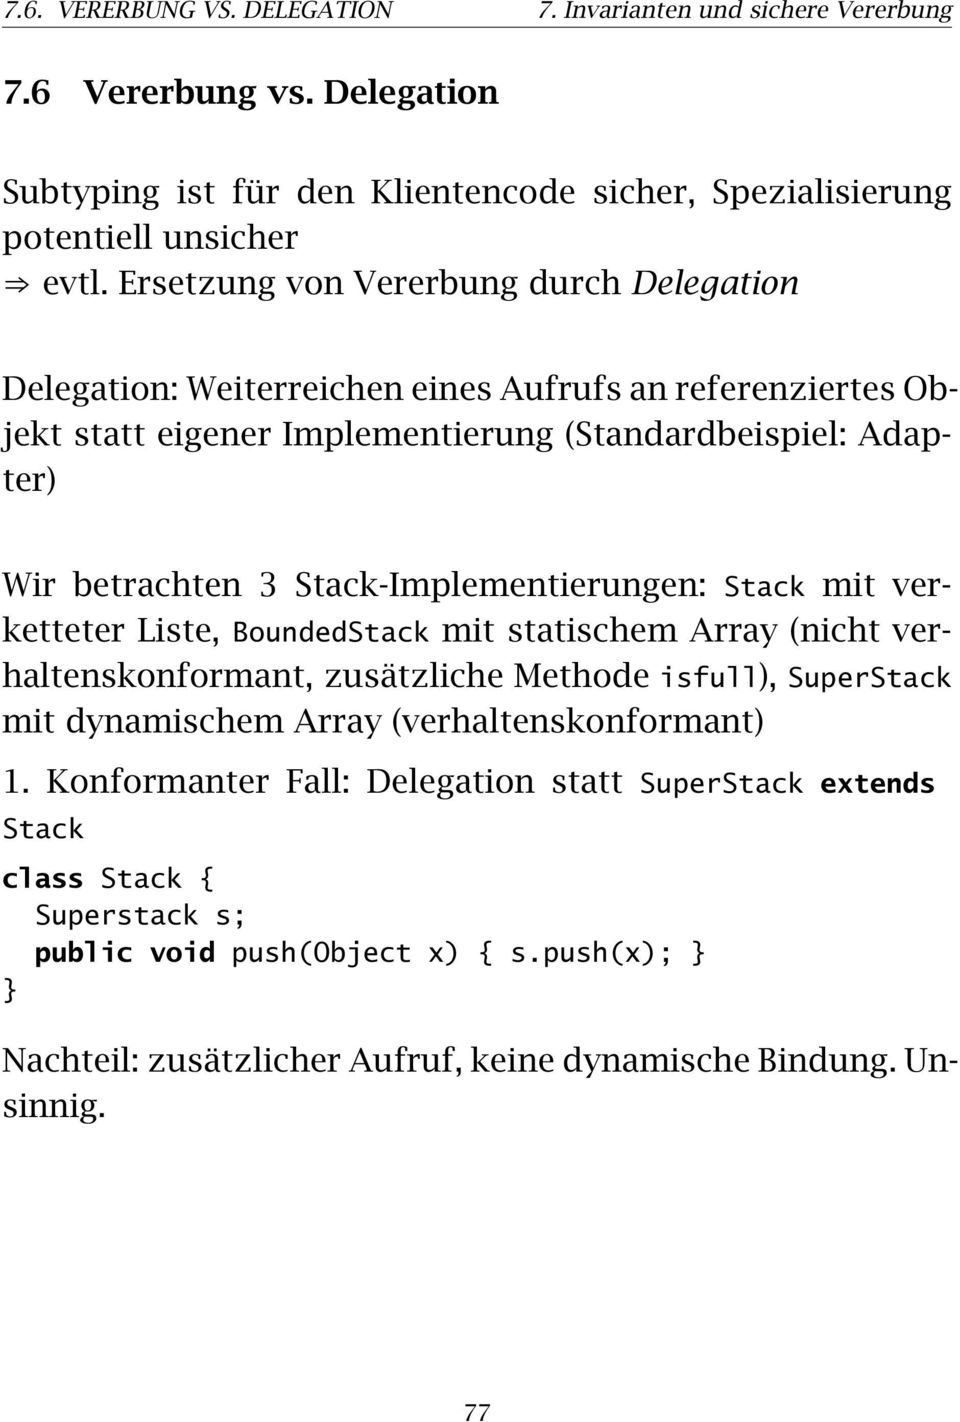 Stack-Implementierungen: Stack mit verketteter Liste, BoundedStack mit statischem Array (nicht verhaltenskonformant, zusätzliche Methode isfull), SuperStack mit dynamischem Array